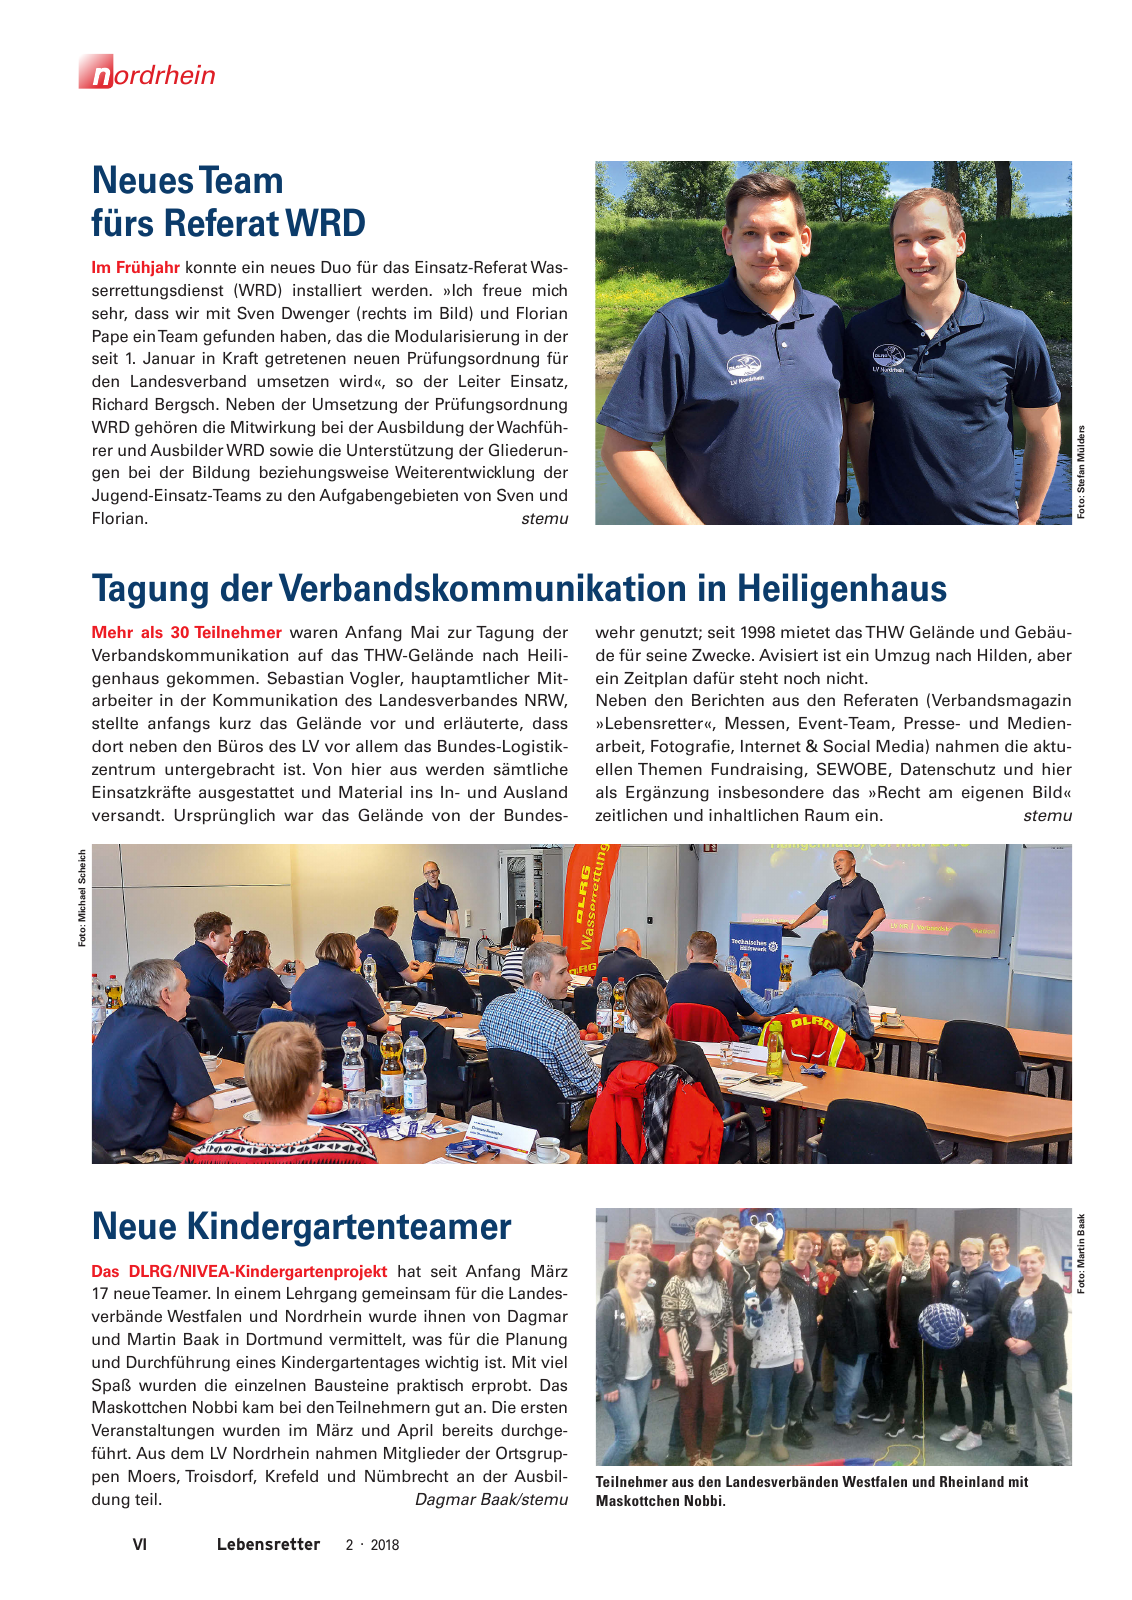 Vorschau Lebensretter 2/2018 - Regionalausgabe Nordrhein Seite 8